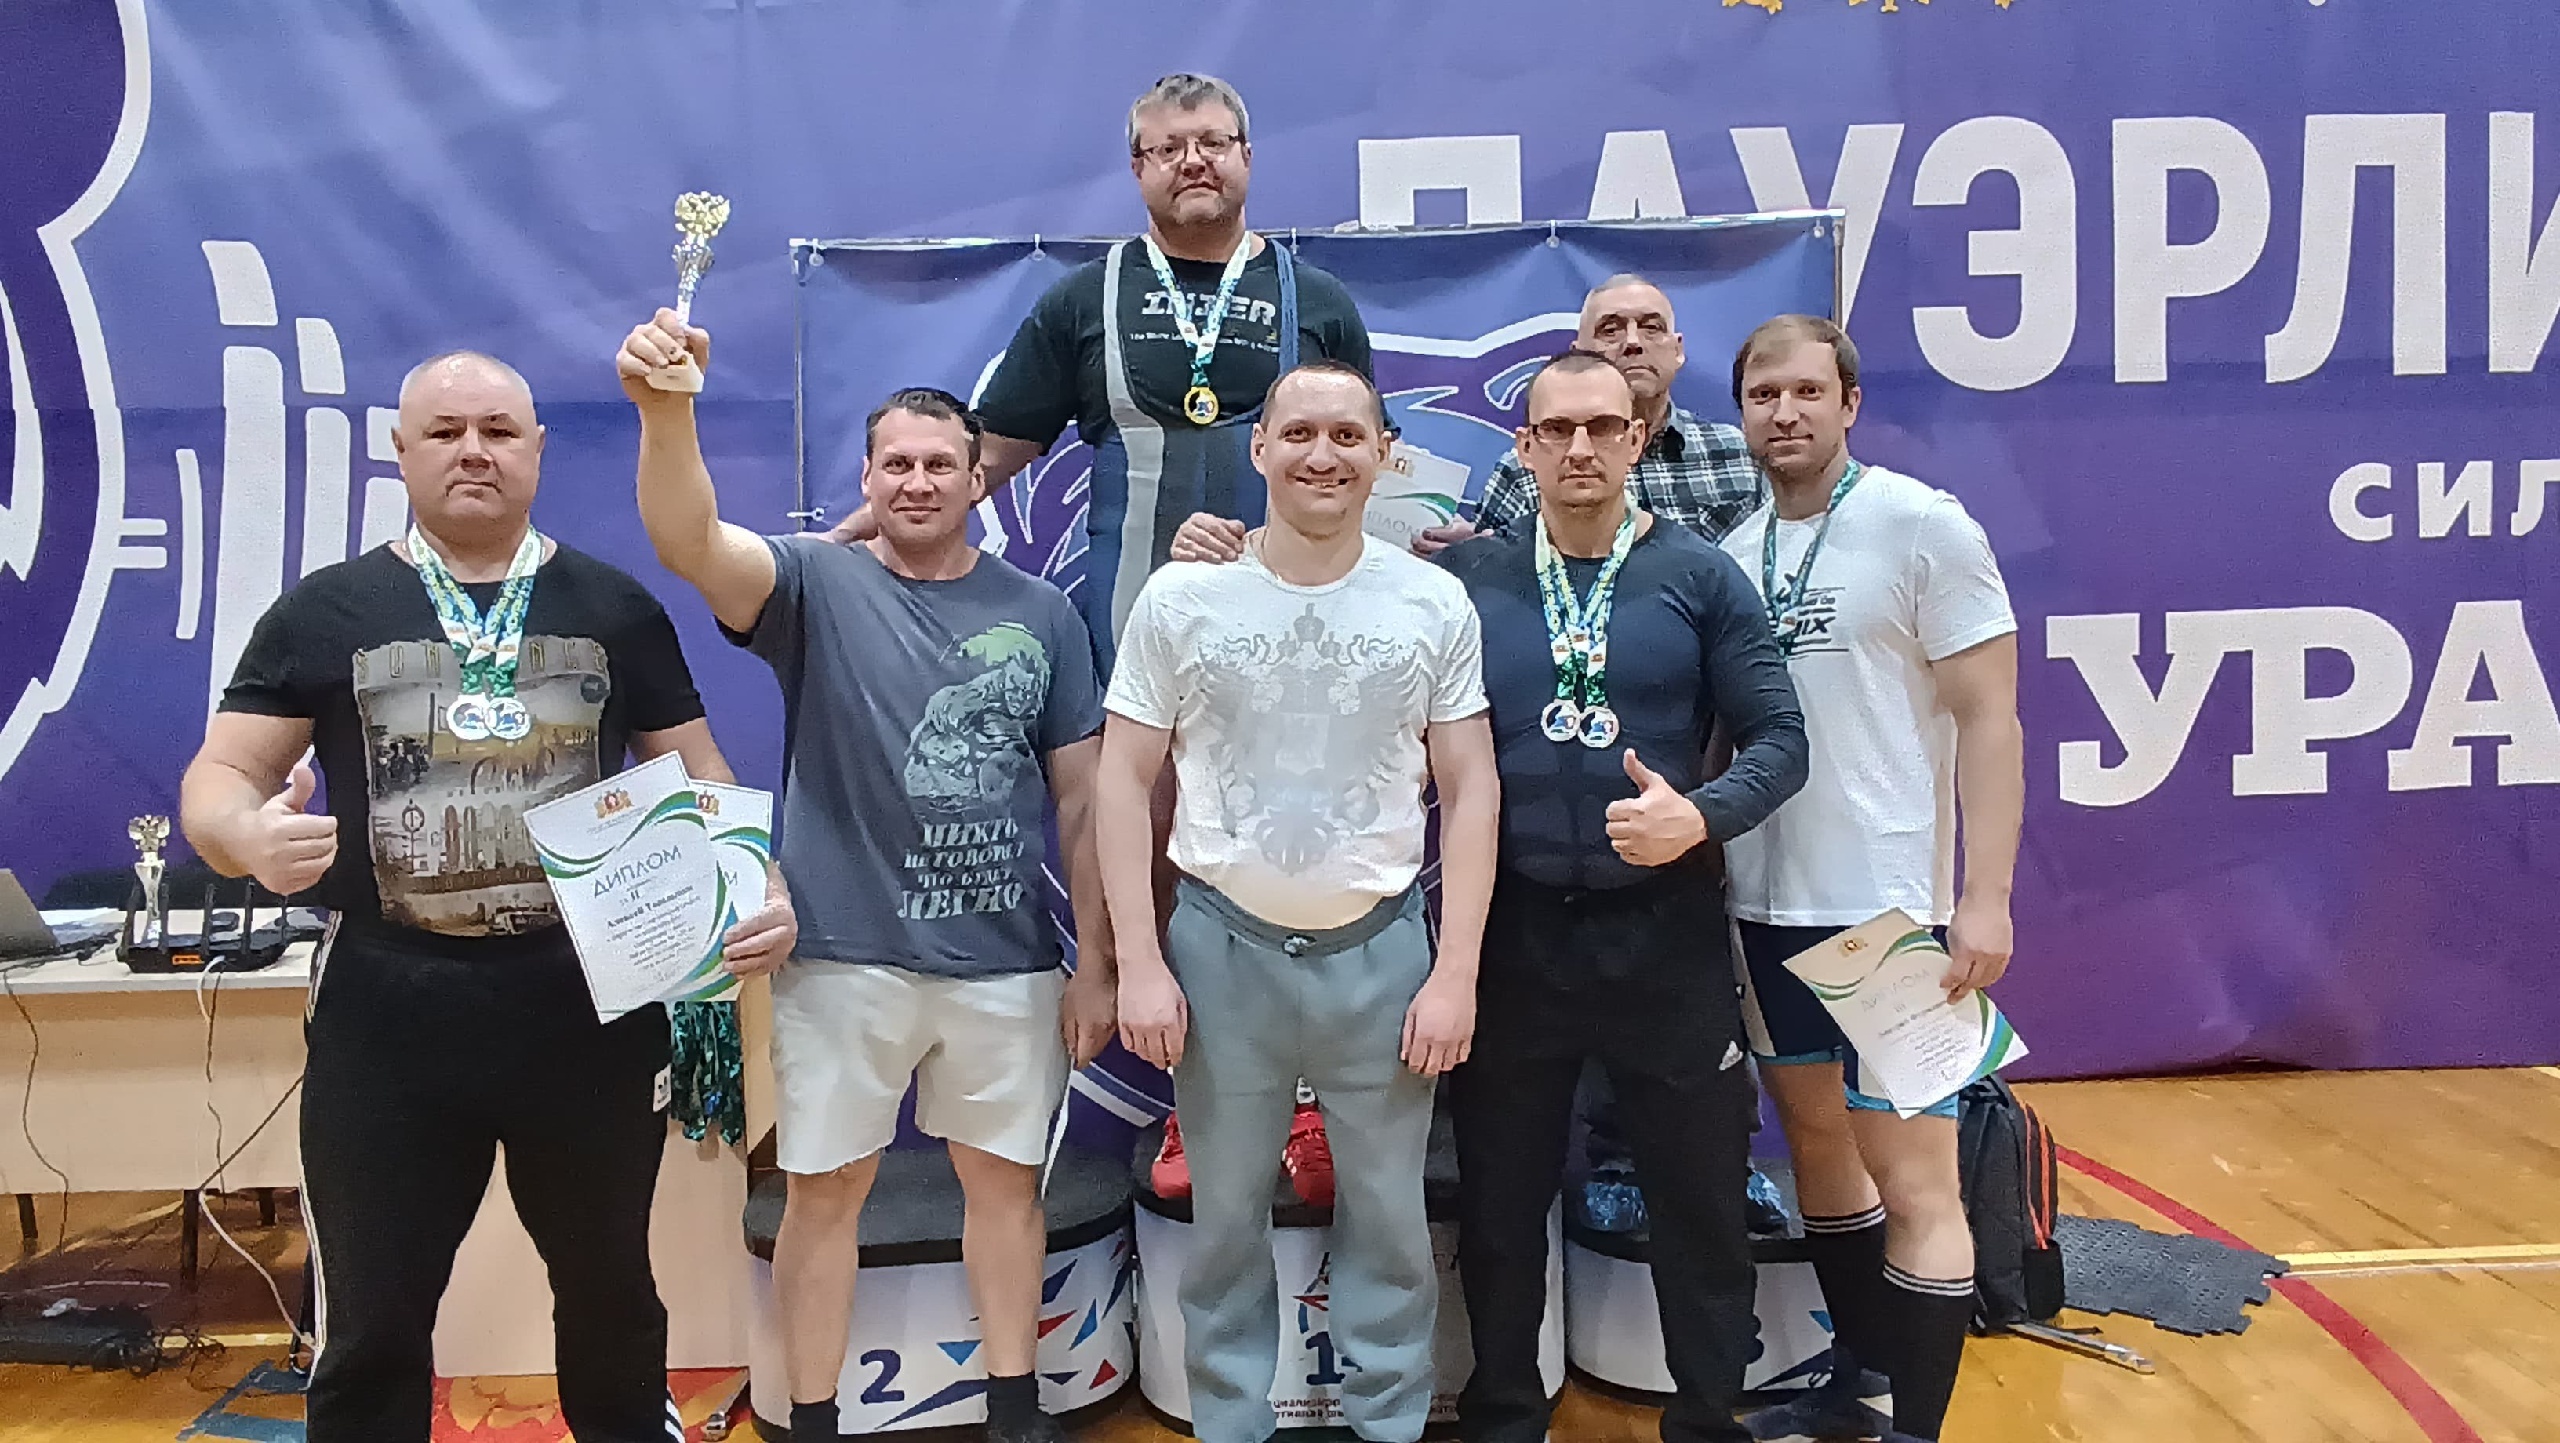 Пауэрлифтеры впервые стали призерами чемпионата области